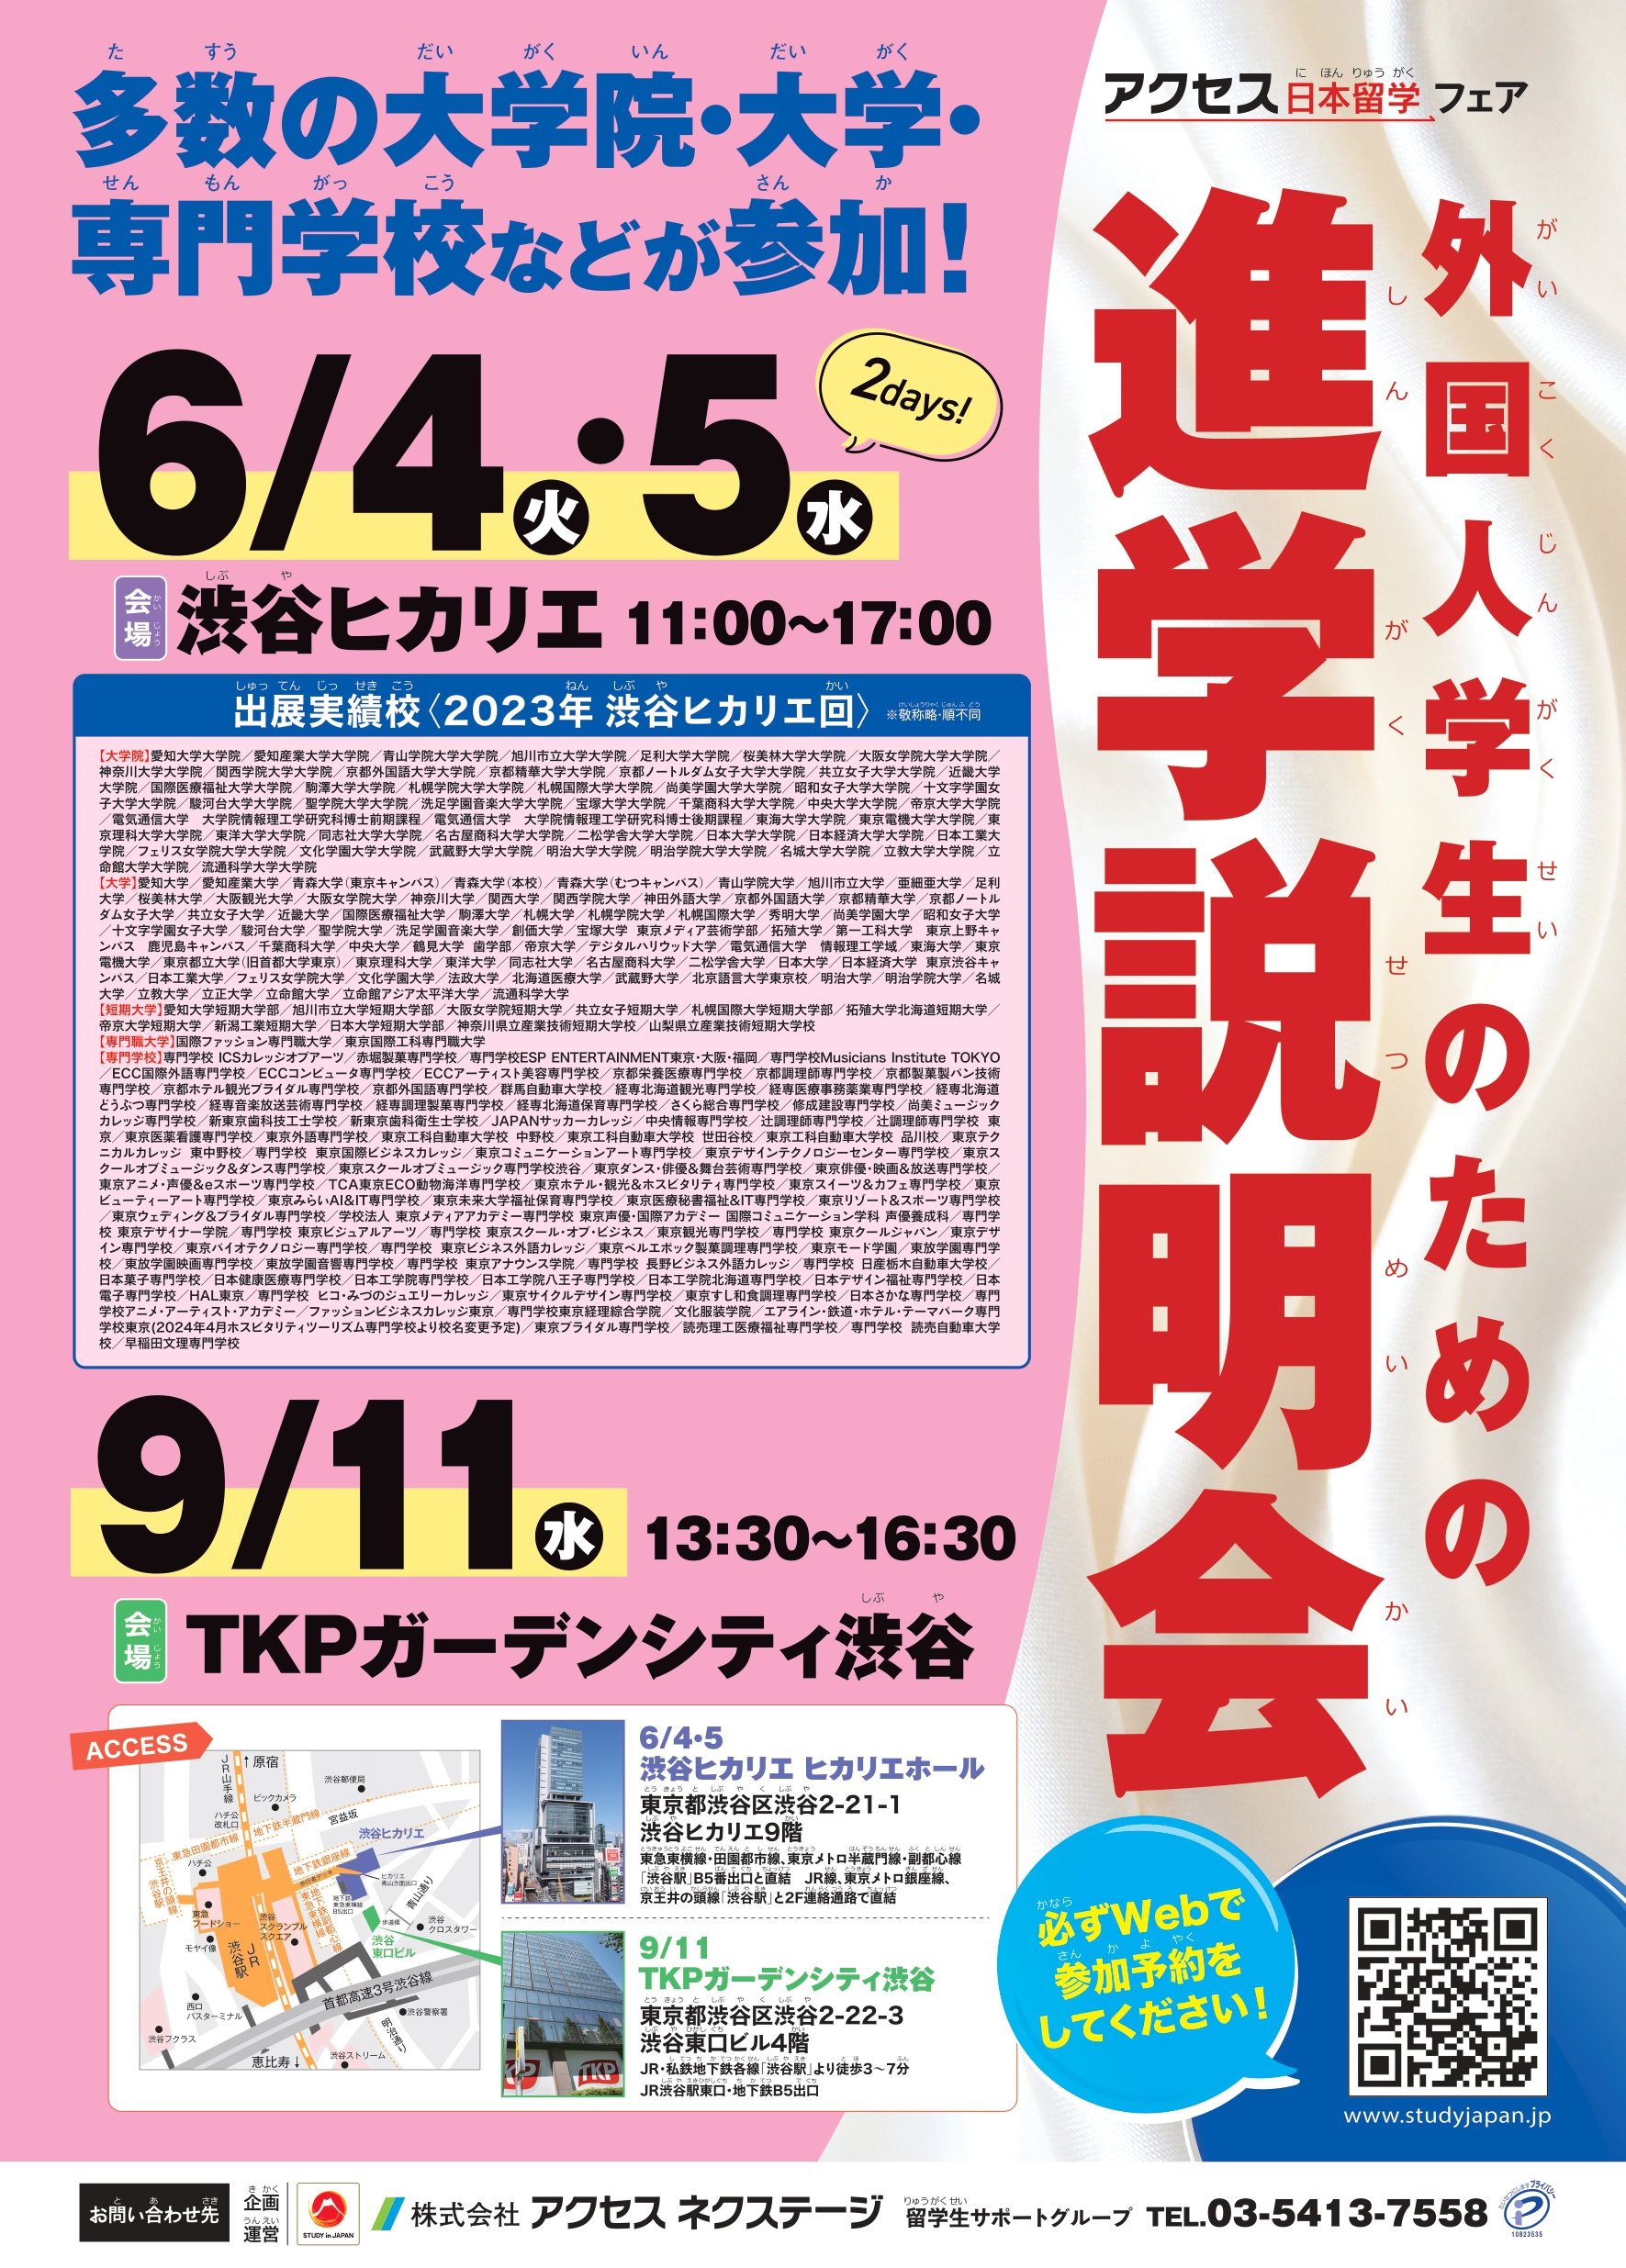 [Hikarie] Séance d'information sur l'avancement des étudiants étrangers_4 juin au 5 juin 2024_Shibuya Hikarie Hall